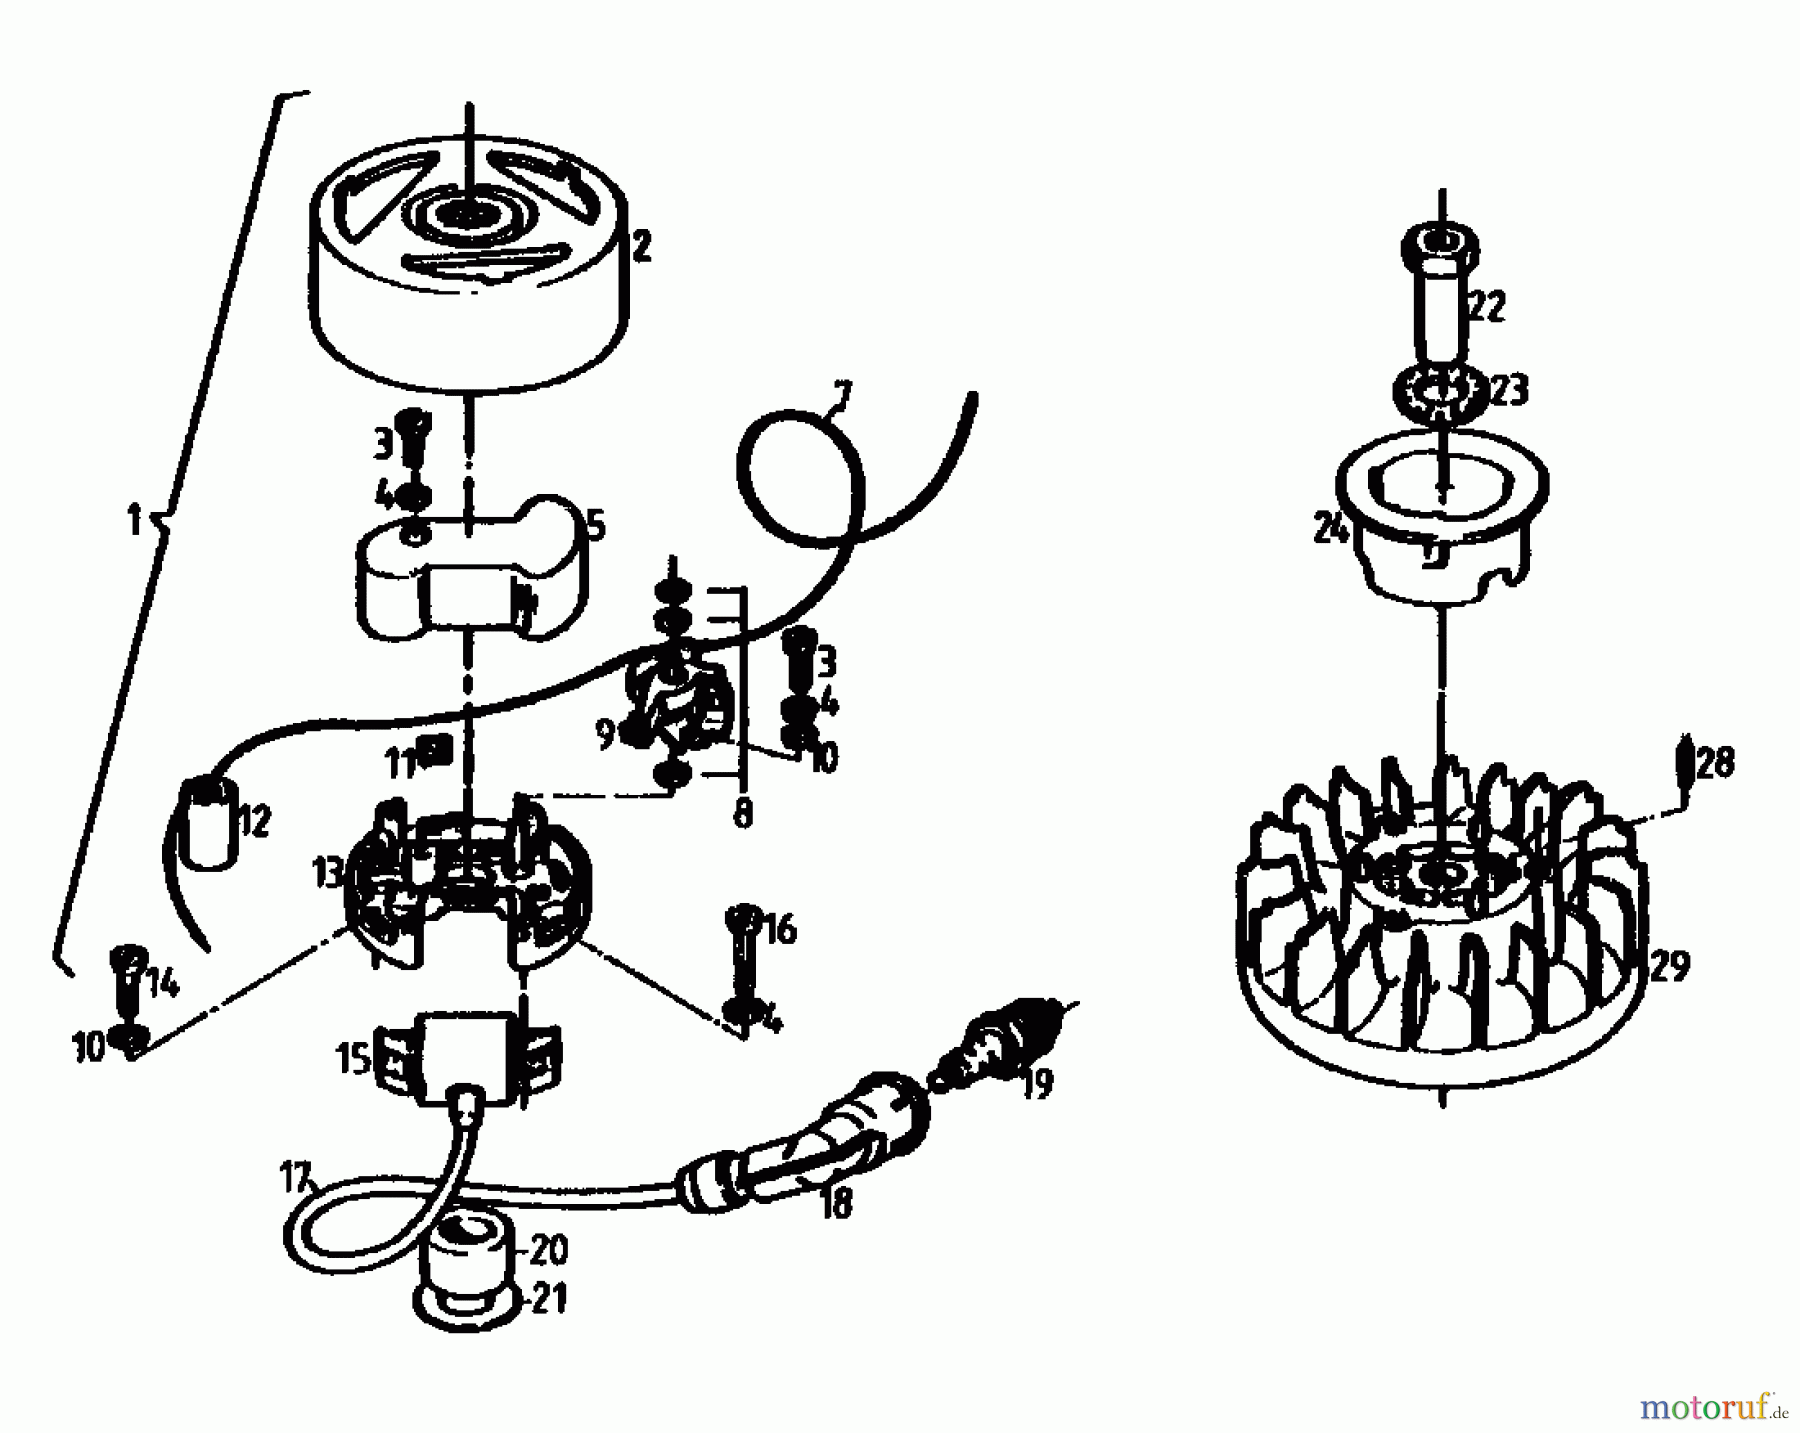  Gutbrod Motofaucheuse BM 100-2/G 07507.01  (1990) Carter de ventilateur, Volant, Lancer, Réservoir, Allumage